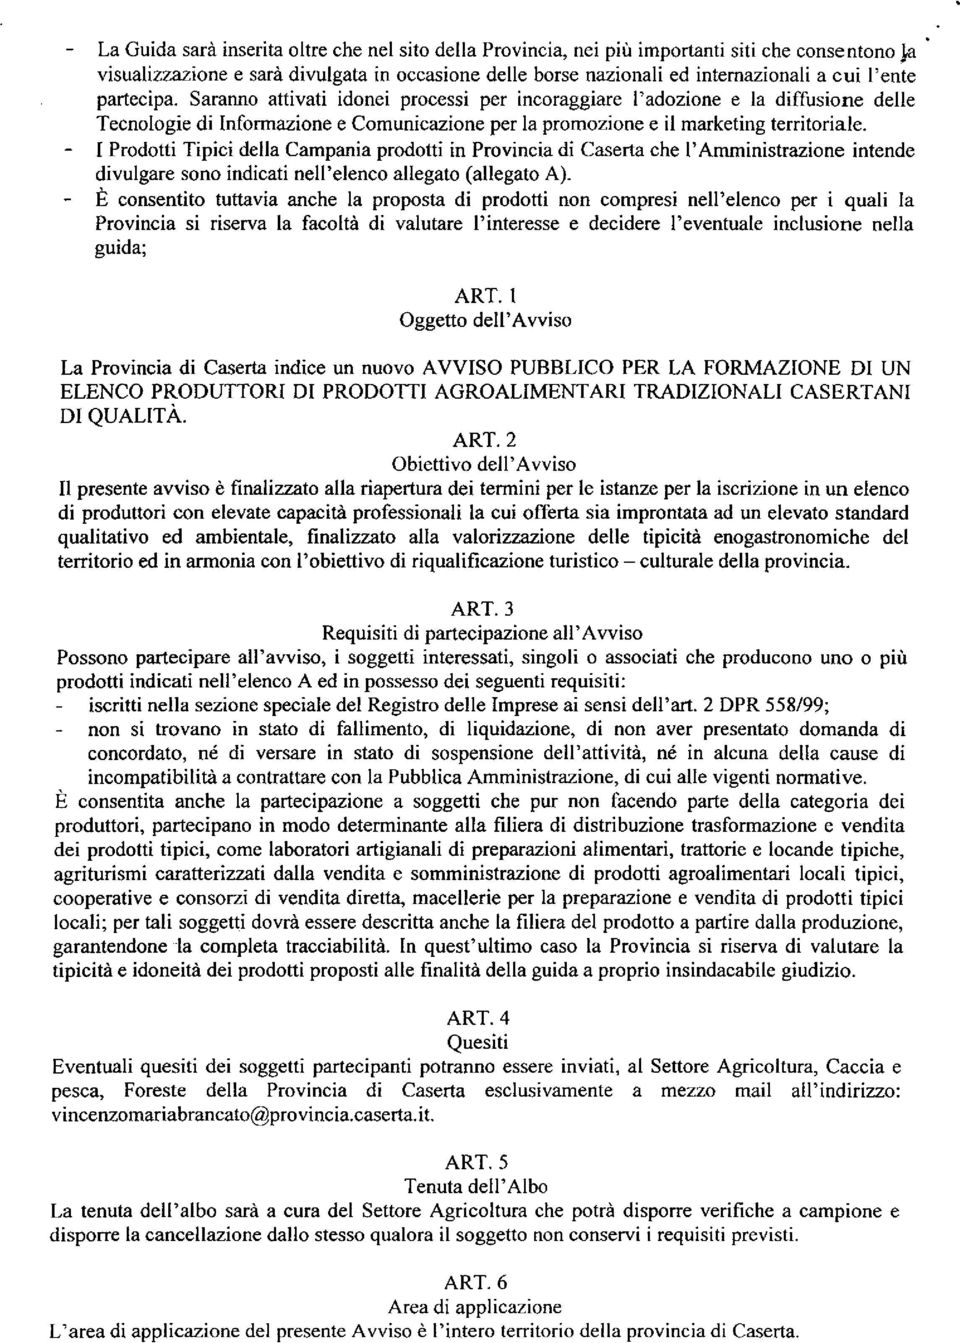 - I Prodotti Tipici della Campania prodotti in Provincia di Caserta che I'Amministrazione intende divulgare sono indicati nell'elenco allegato (allegato A).